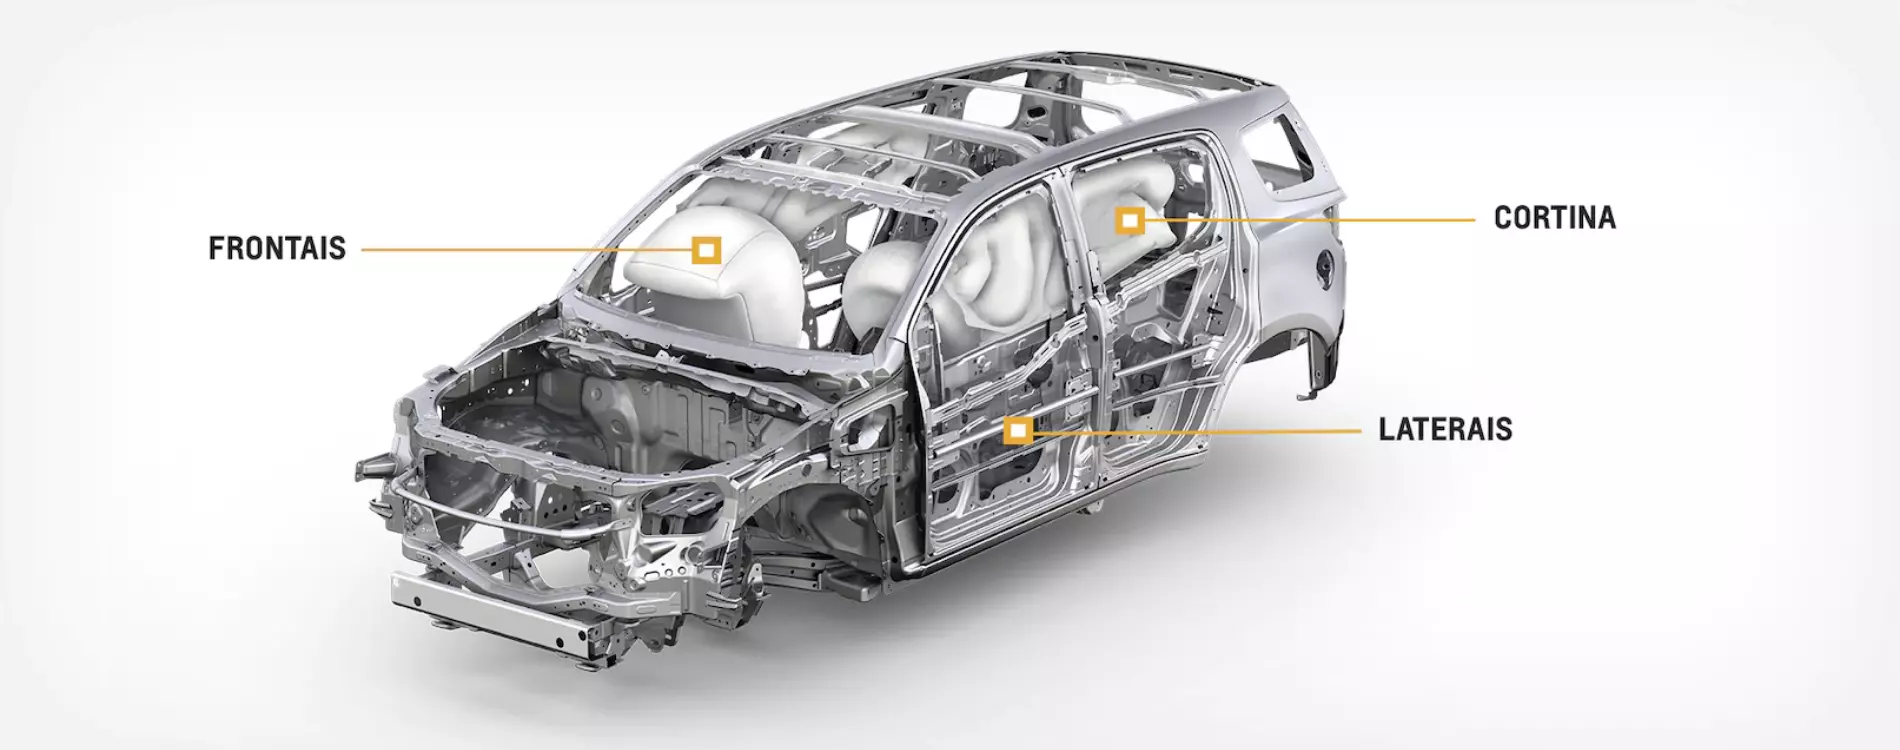 Imagem ilustrativa que demonstra o funcionamento dos 6 airbags disponíveis no Trailblazer 2022, frontais, laterais e de cortina